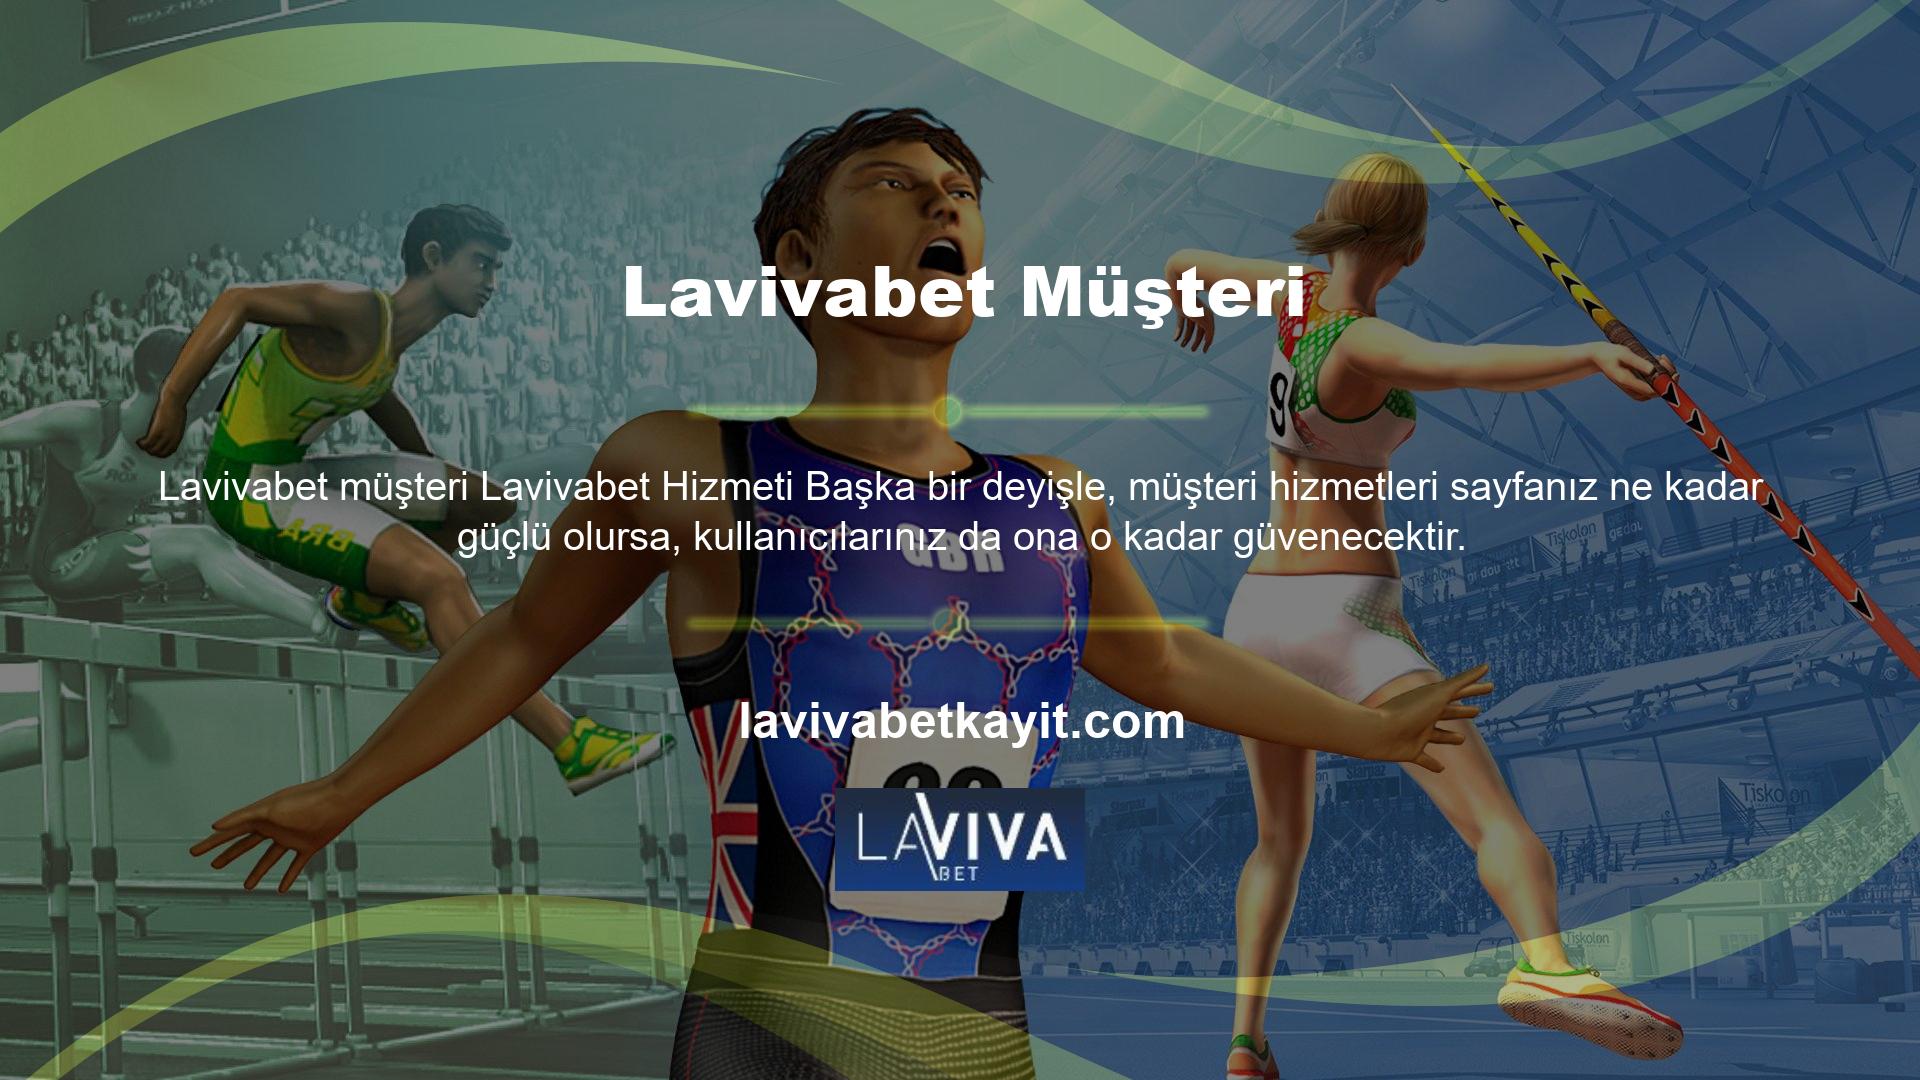 Lavivabet web sitesi destek açısından oldukça iyidir